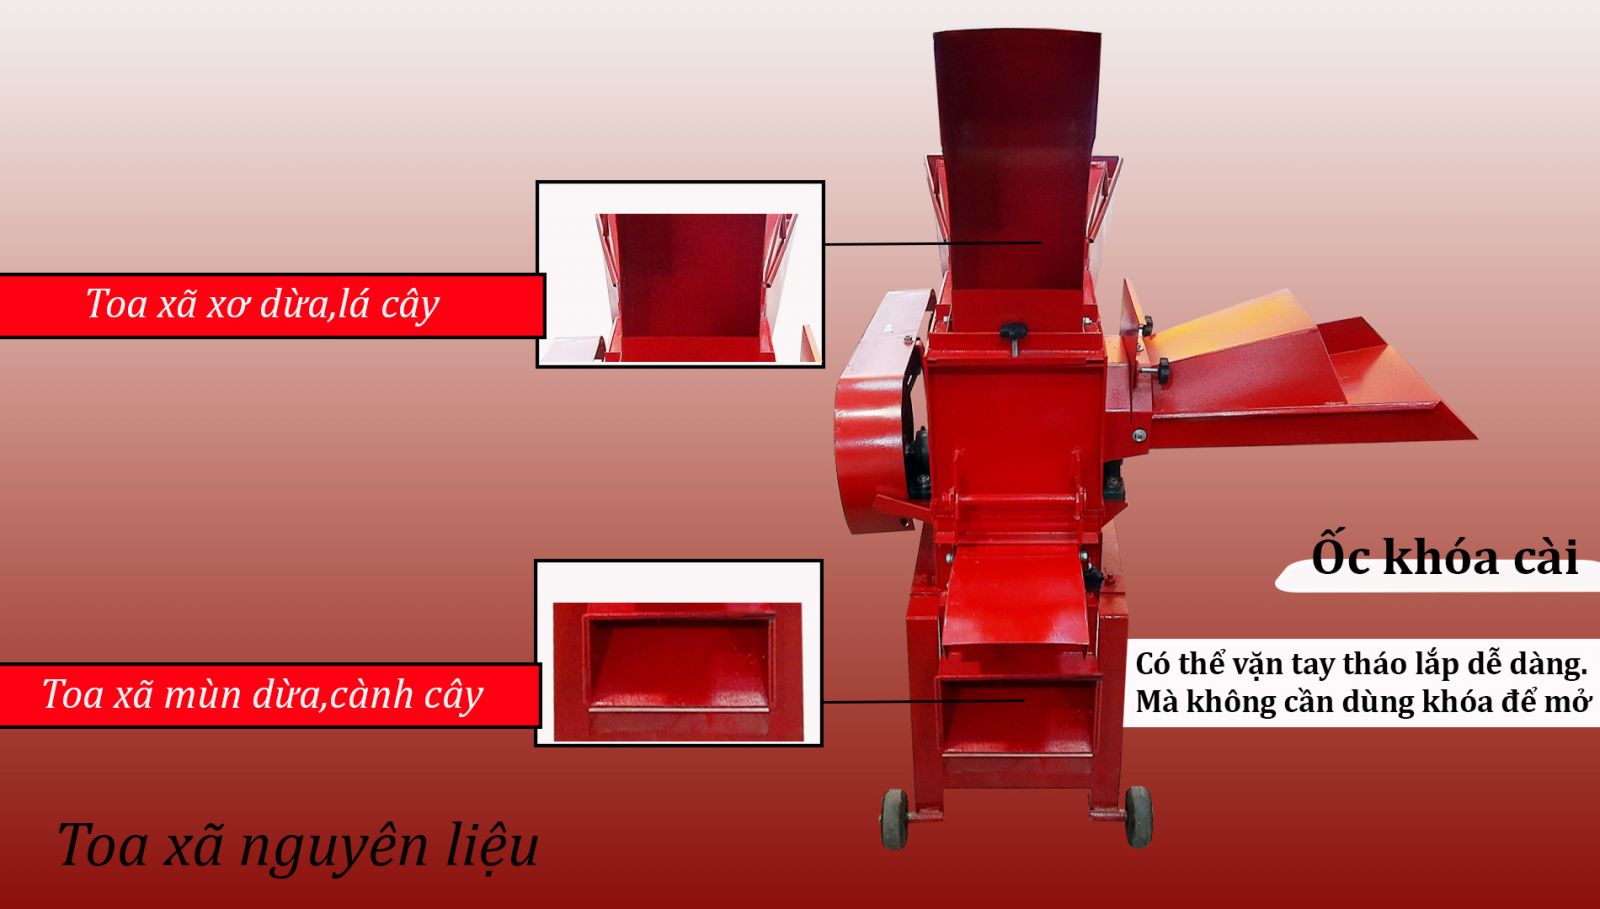 Toa xã nguyên liệu máy băm xơ dừa Takyo TK300